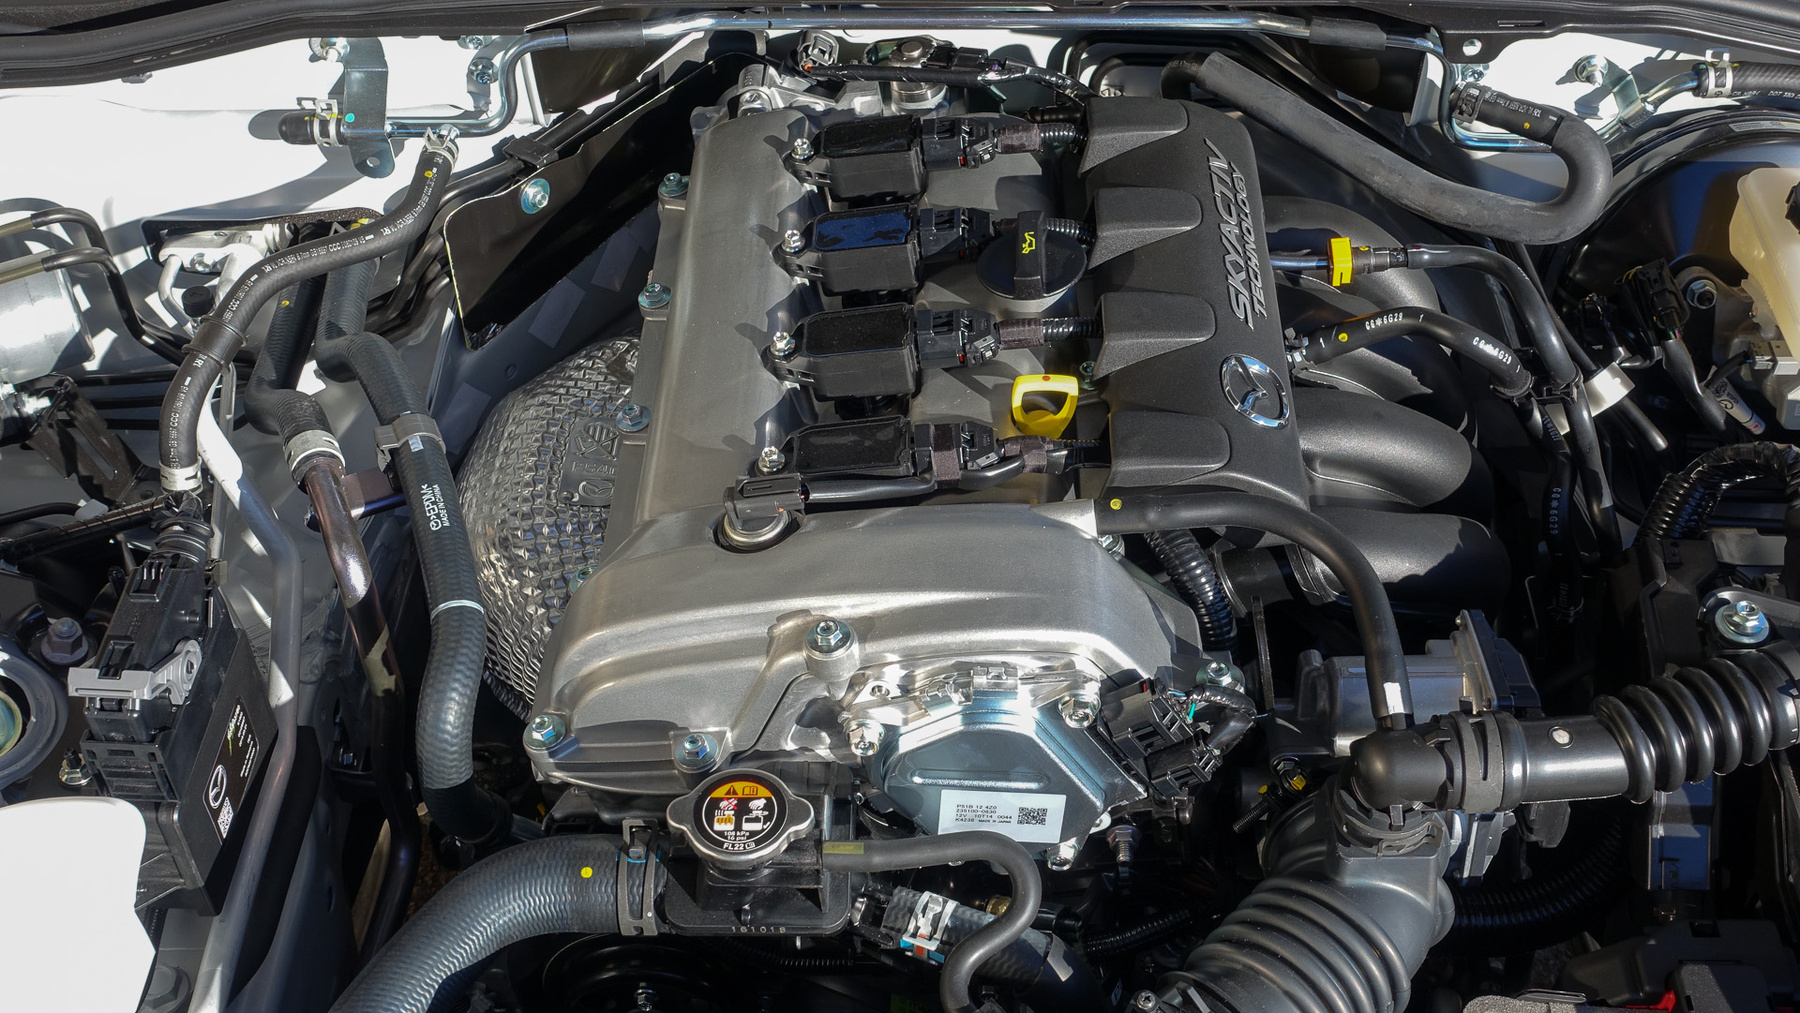 Kedvenc Mazda-motorom: 1,5 liter, 131 lóerő és rengeteg életkedv